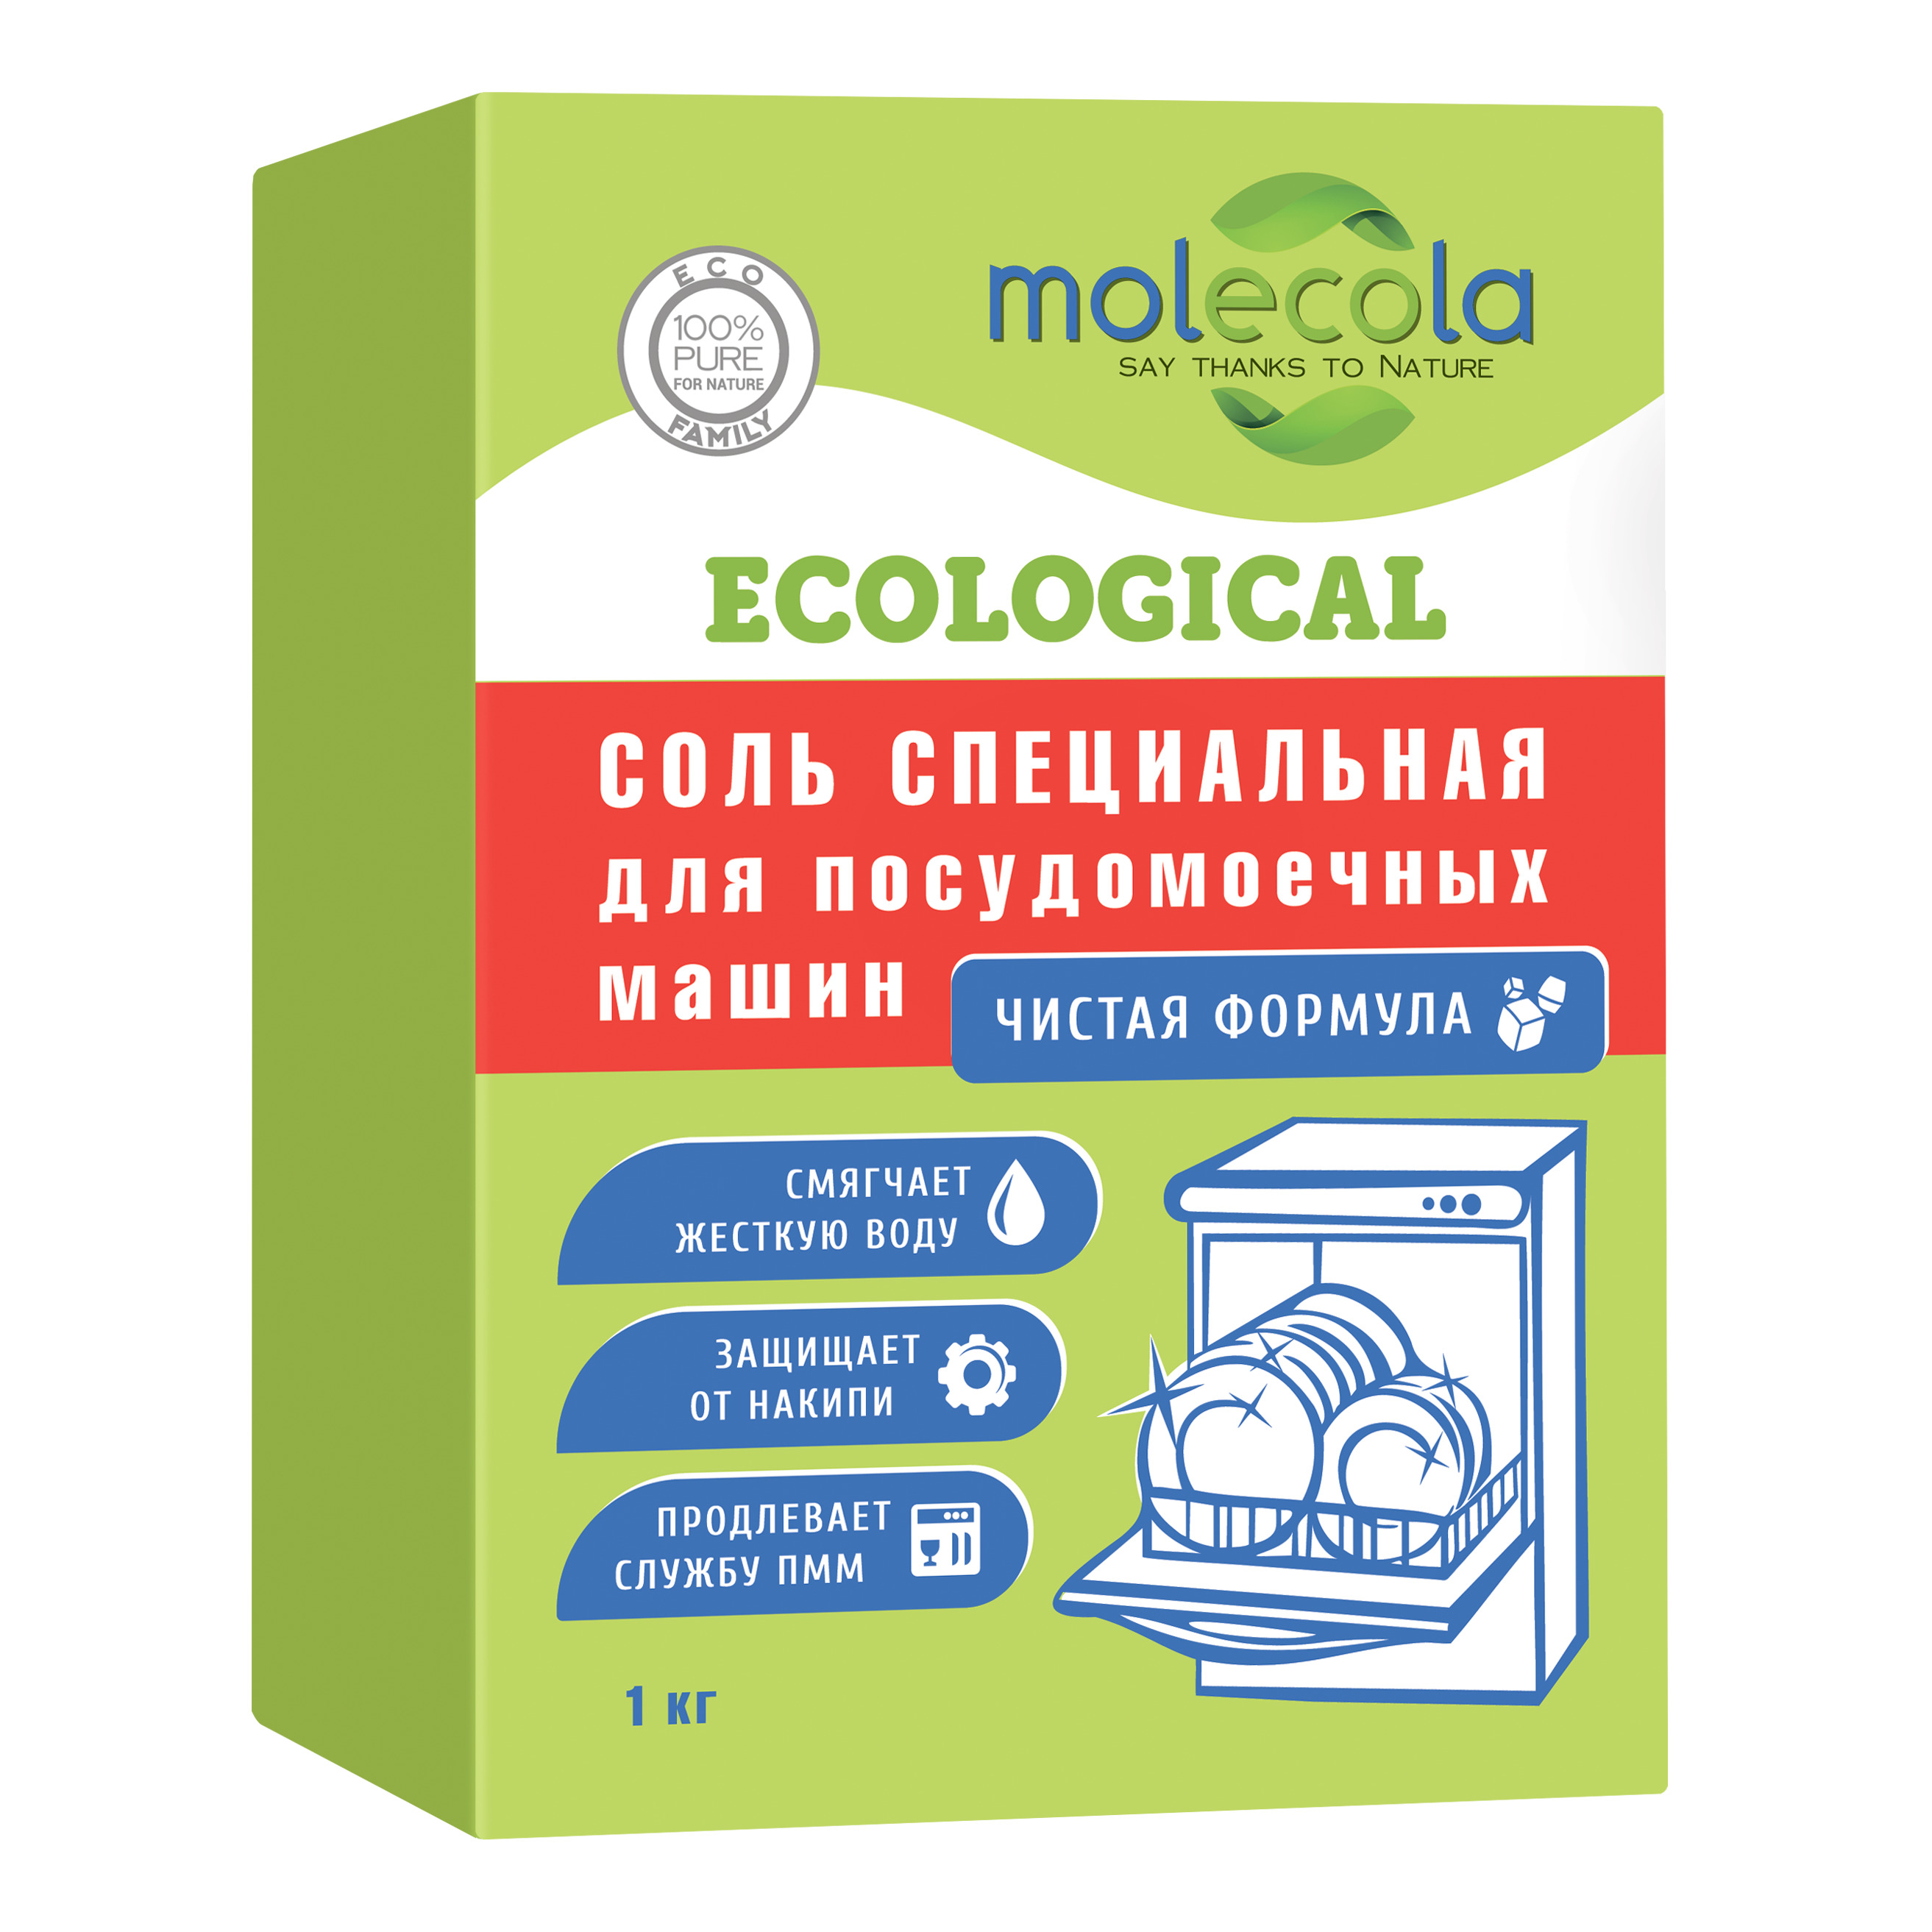 Соль гранулированная для посудомоечных машин Molecola 1кг